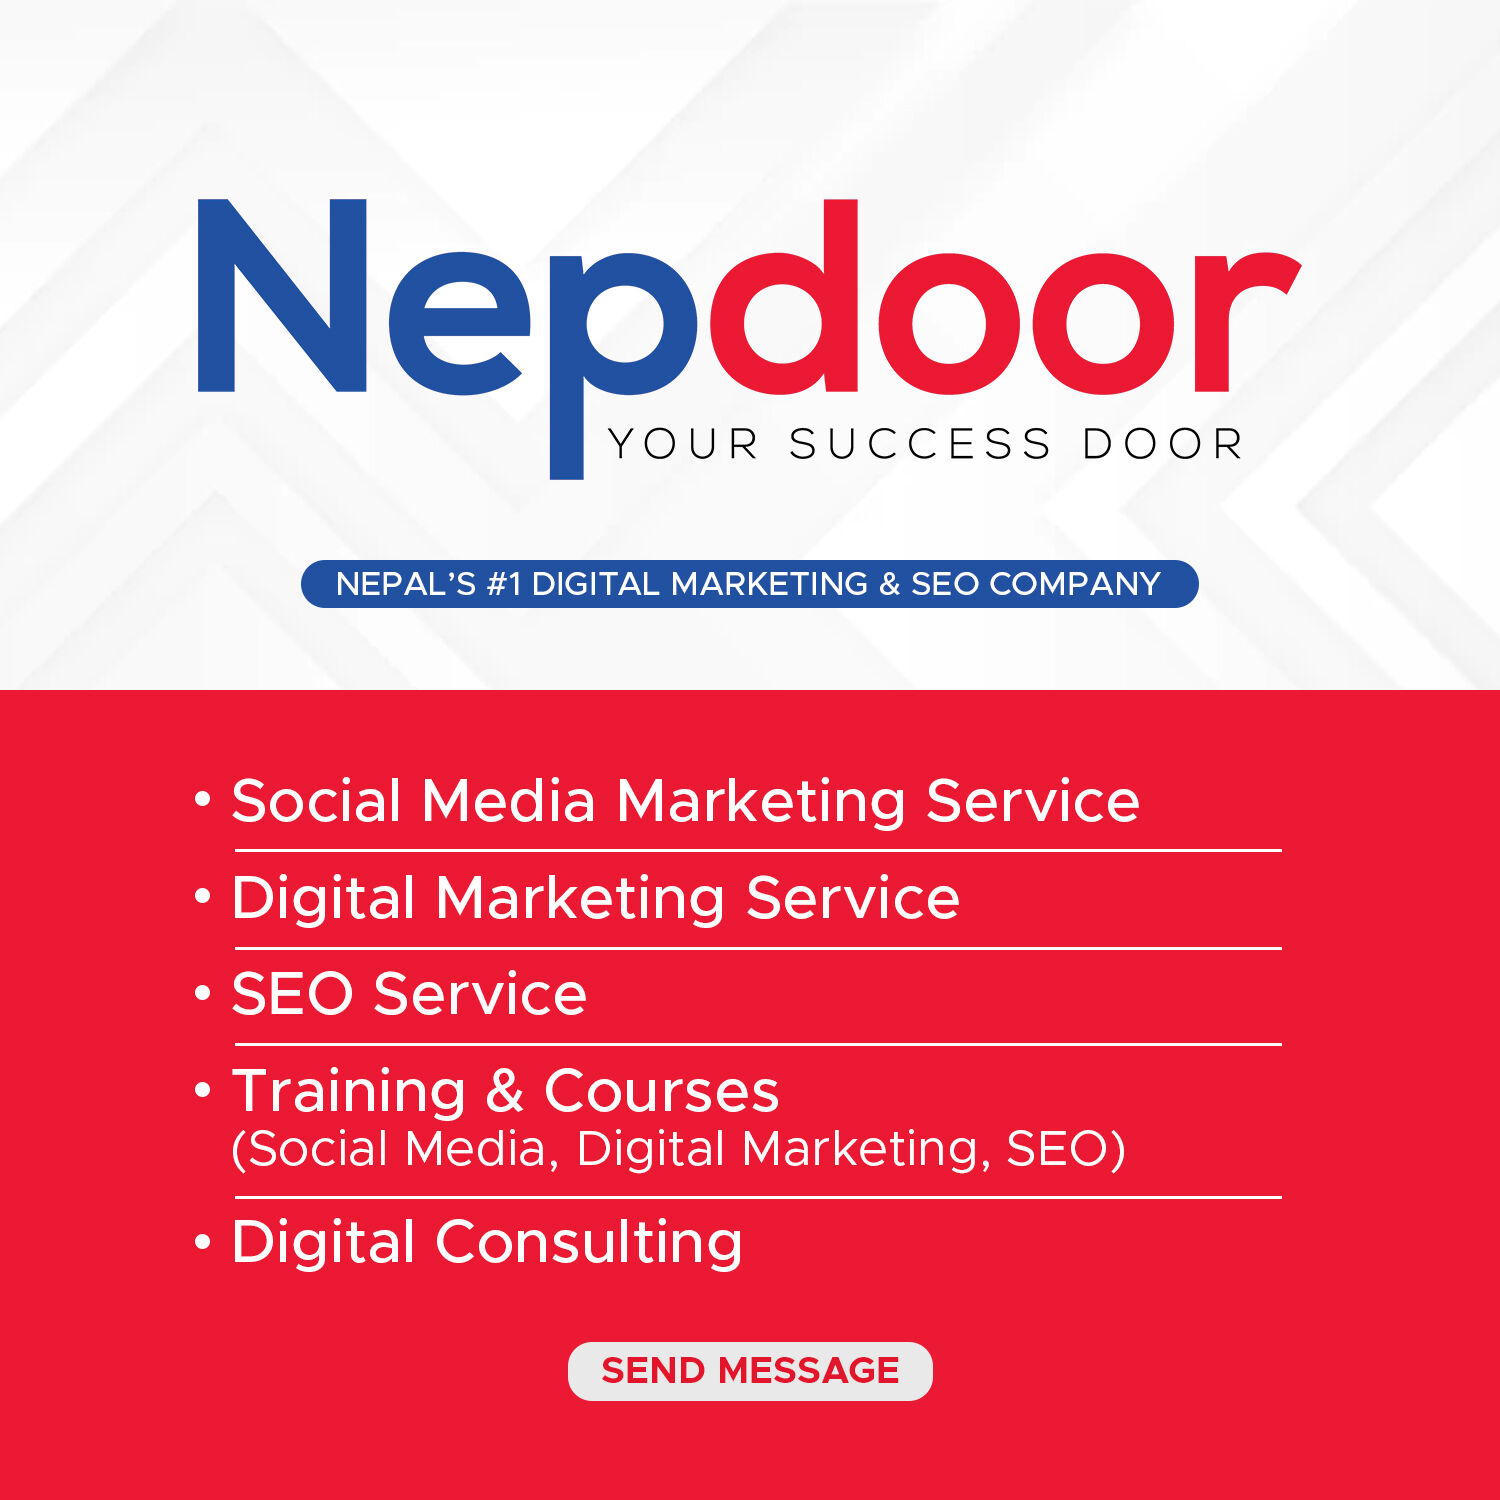 services of nepdoor